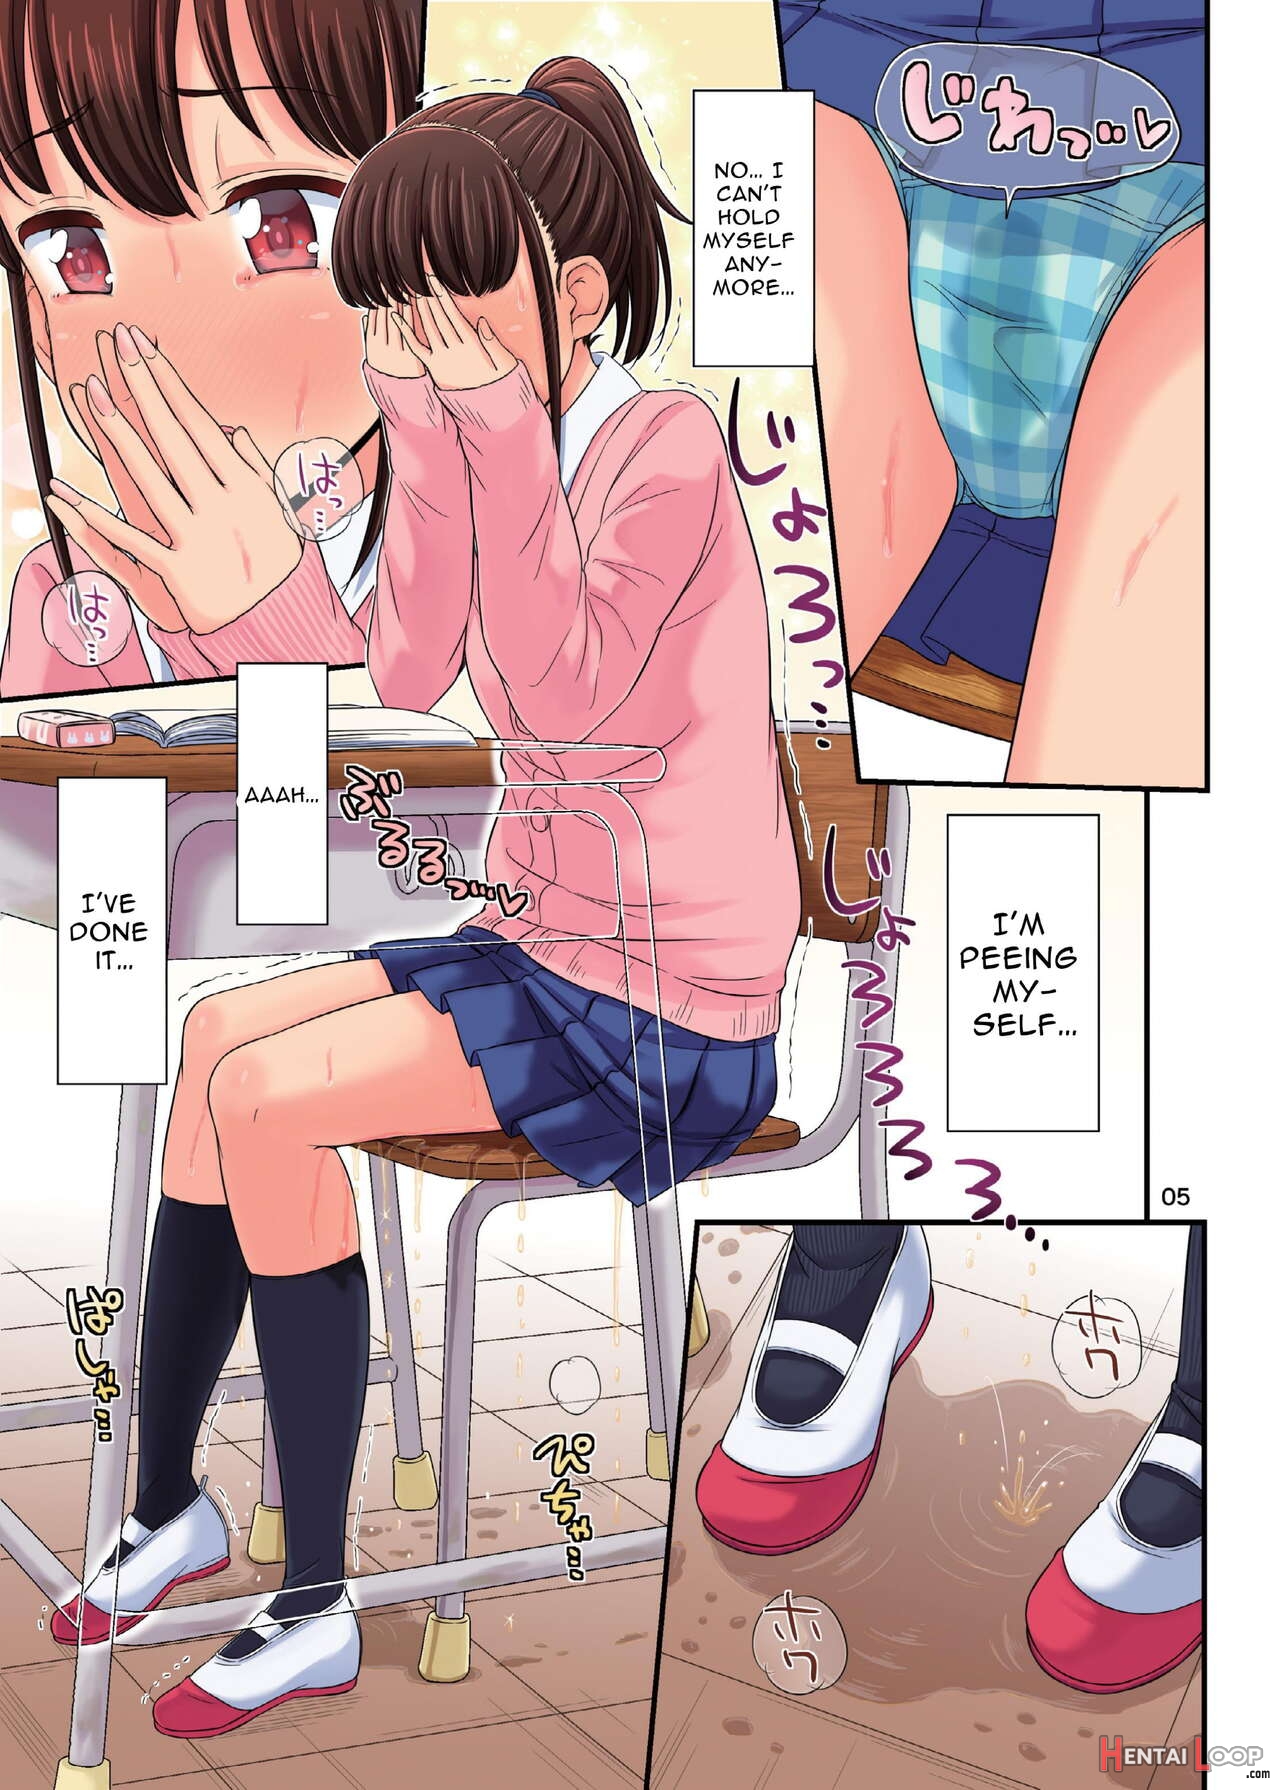 Oshikko Hyakkei 4 - Urination Scenes #4 page 7